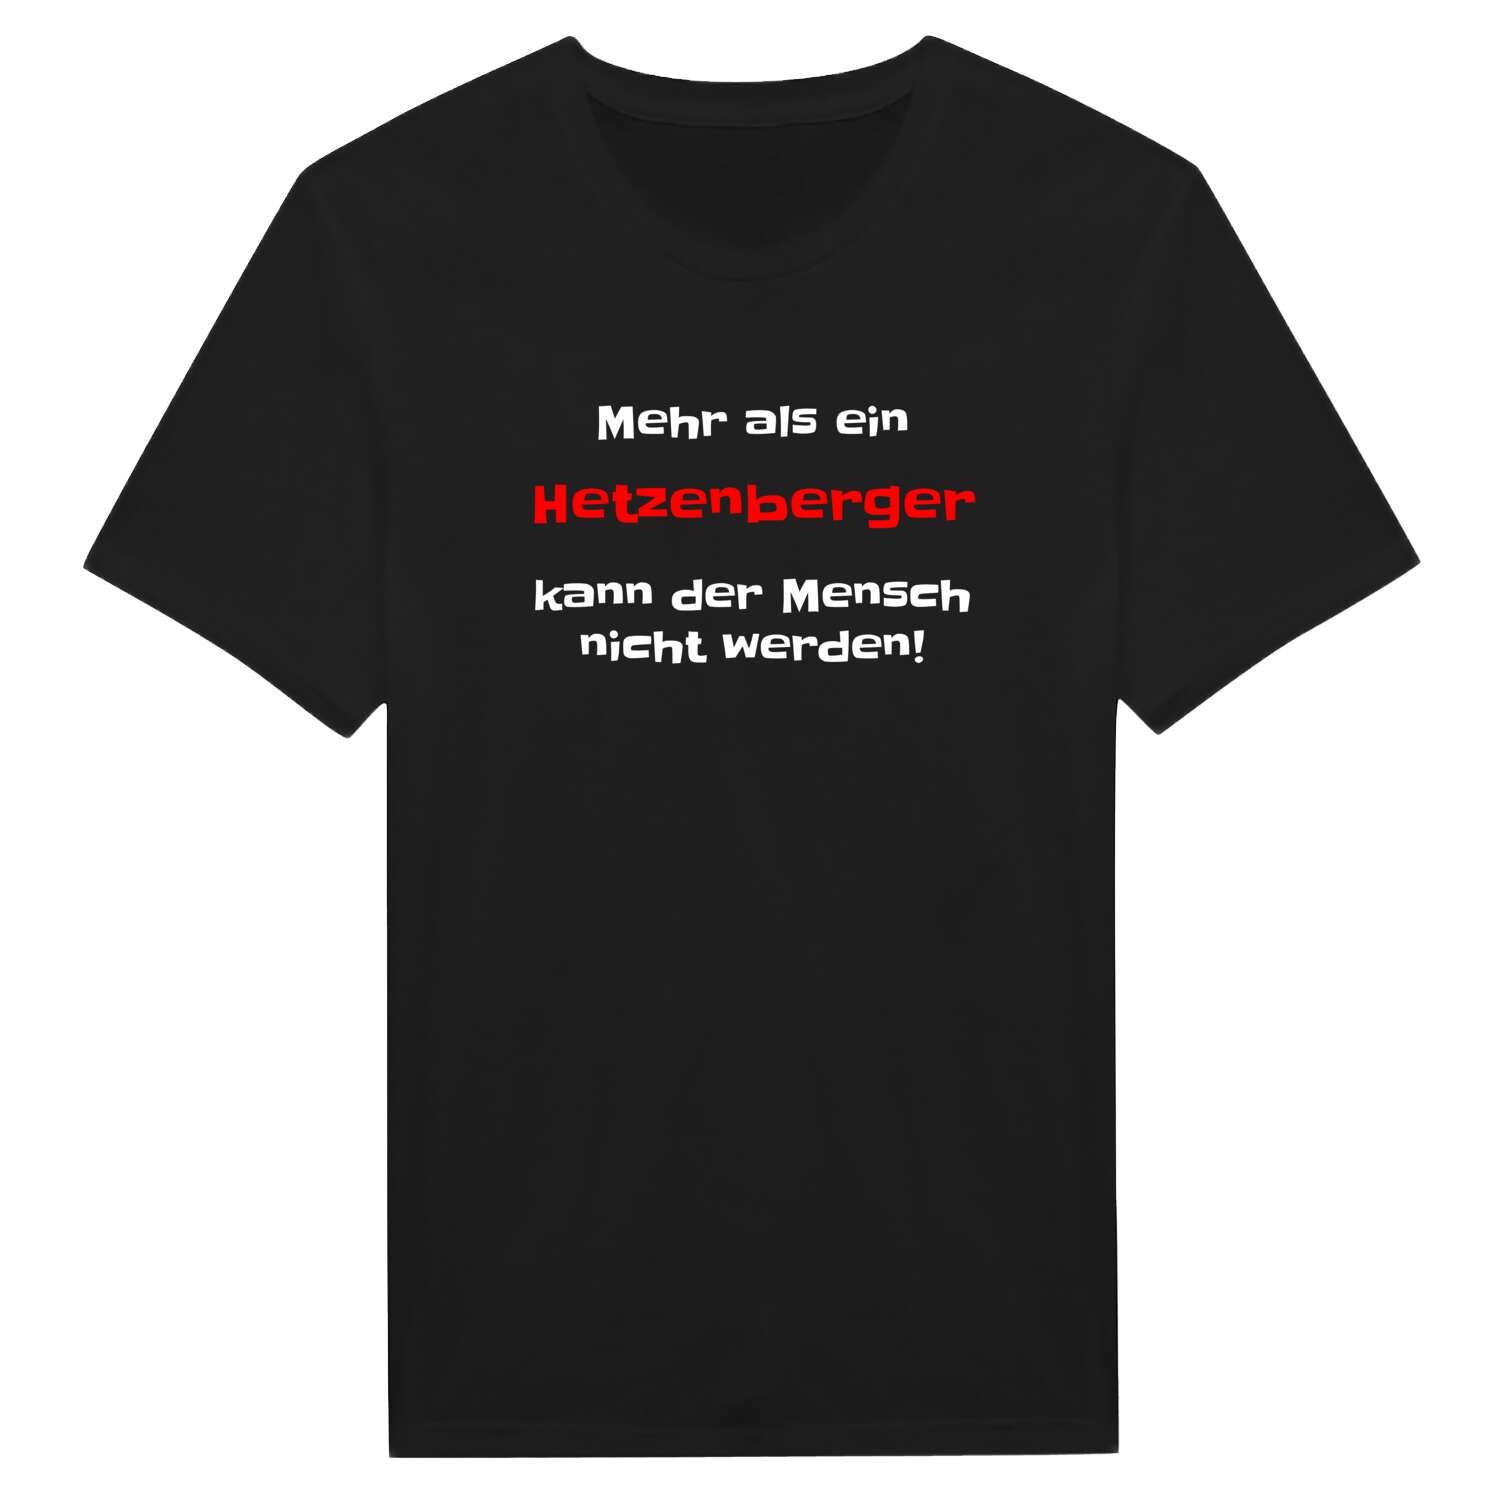 Hetzenberg T-Shirt »Mehr als ein«